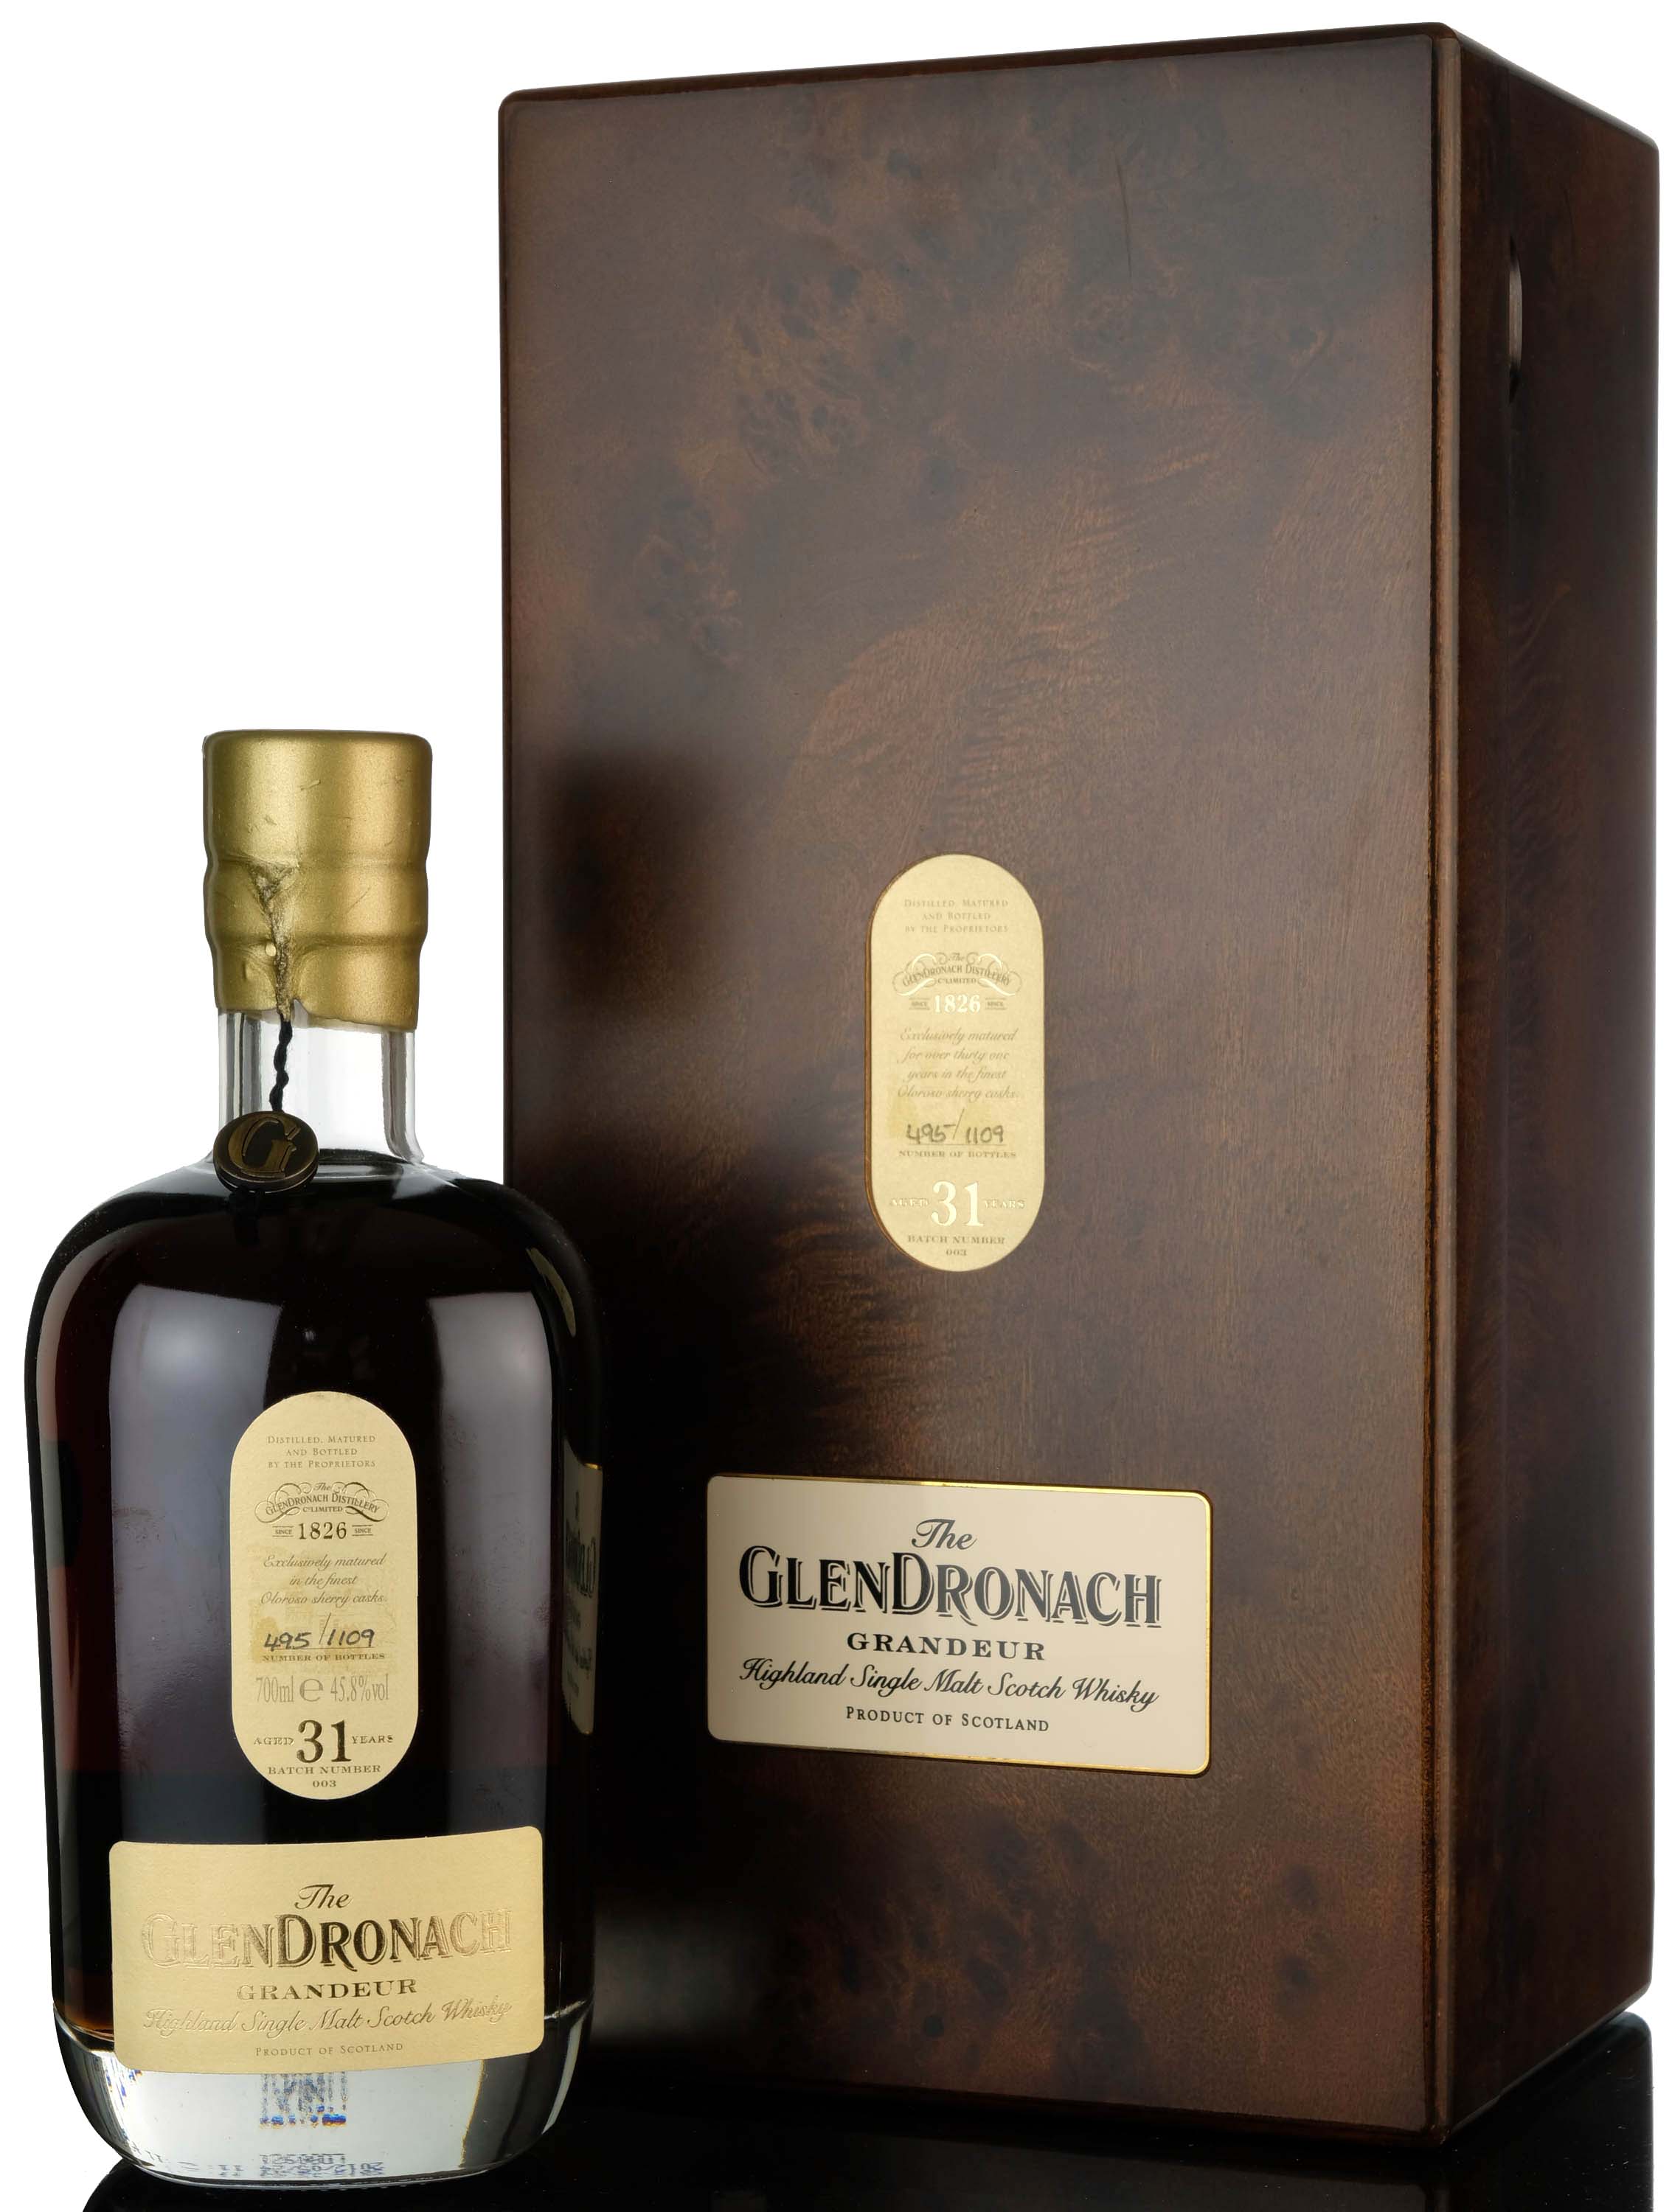 Glendronach 31 Year Old - Grandeur Batch 3